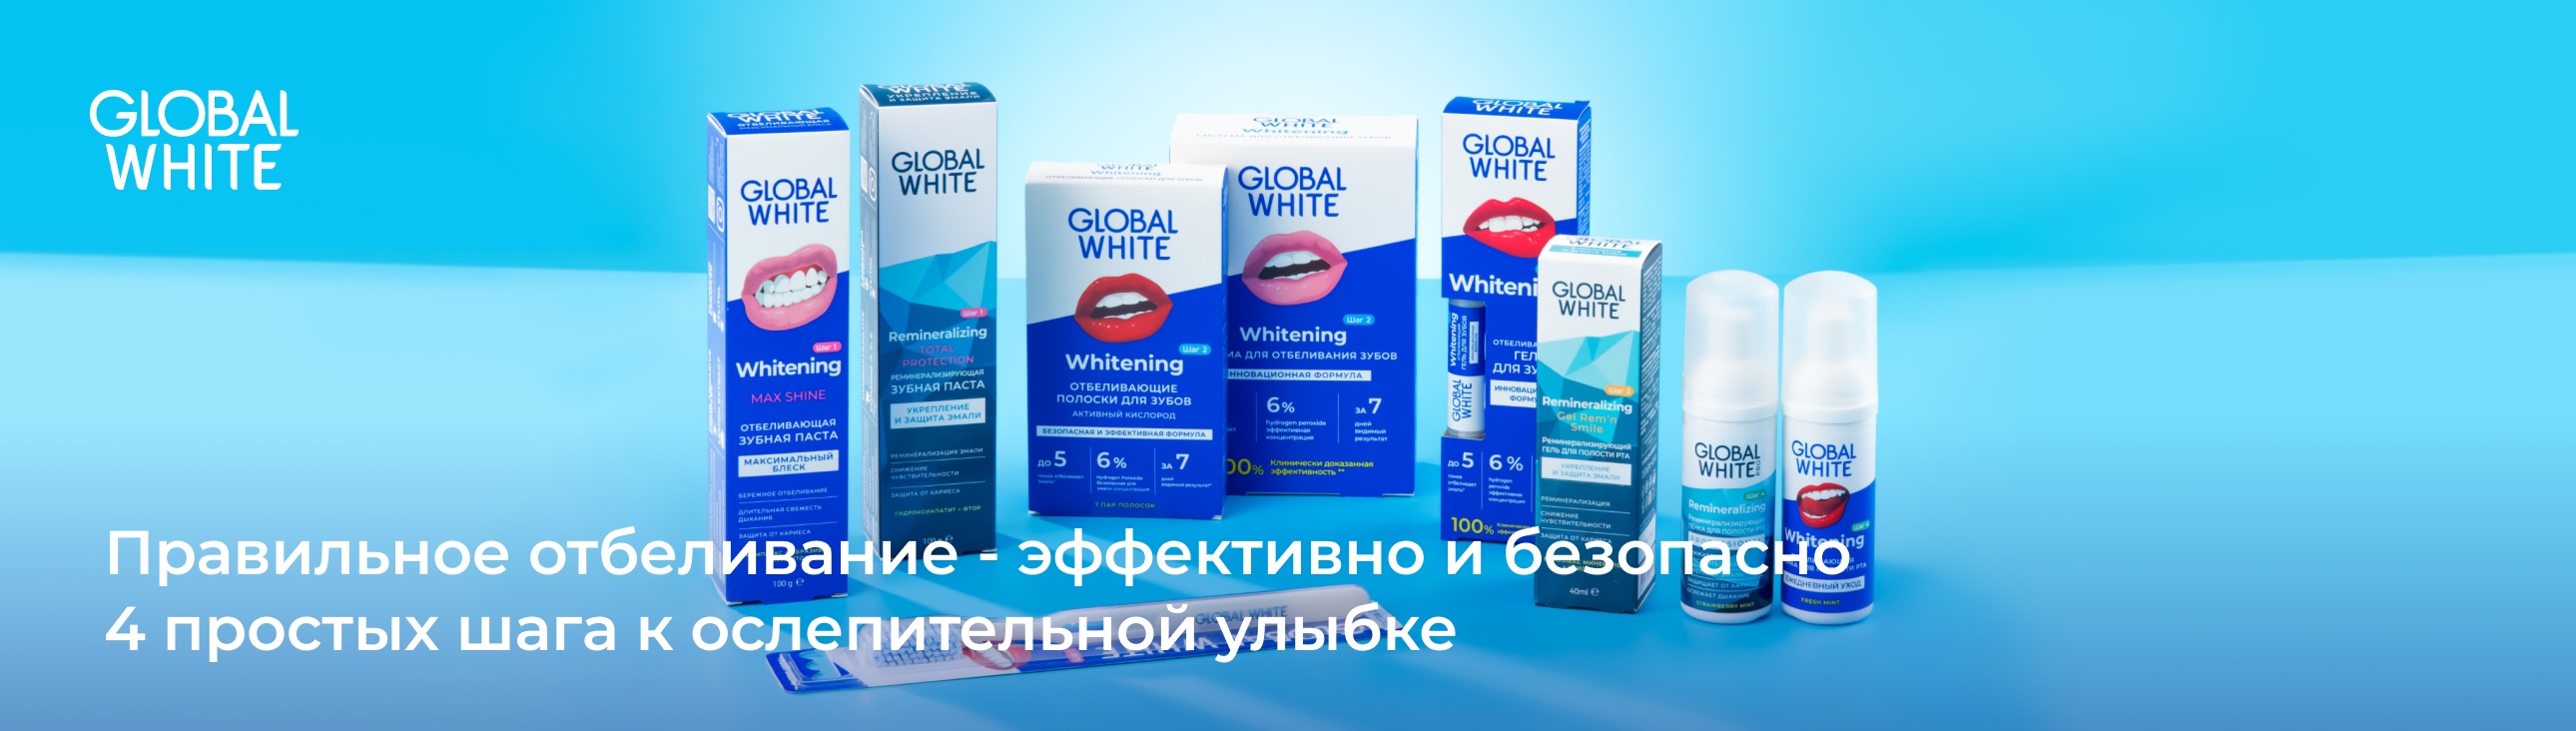 Global white